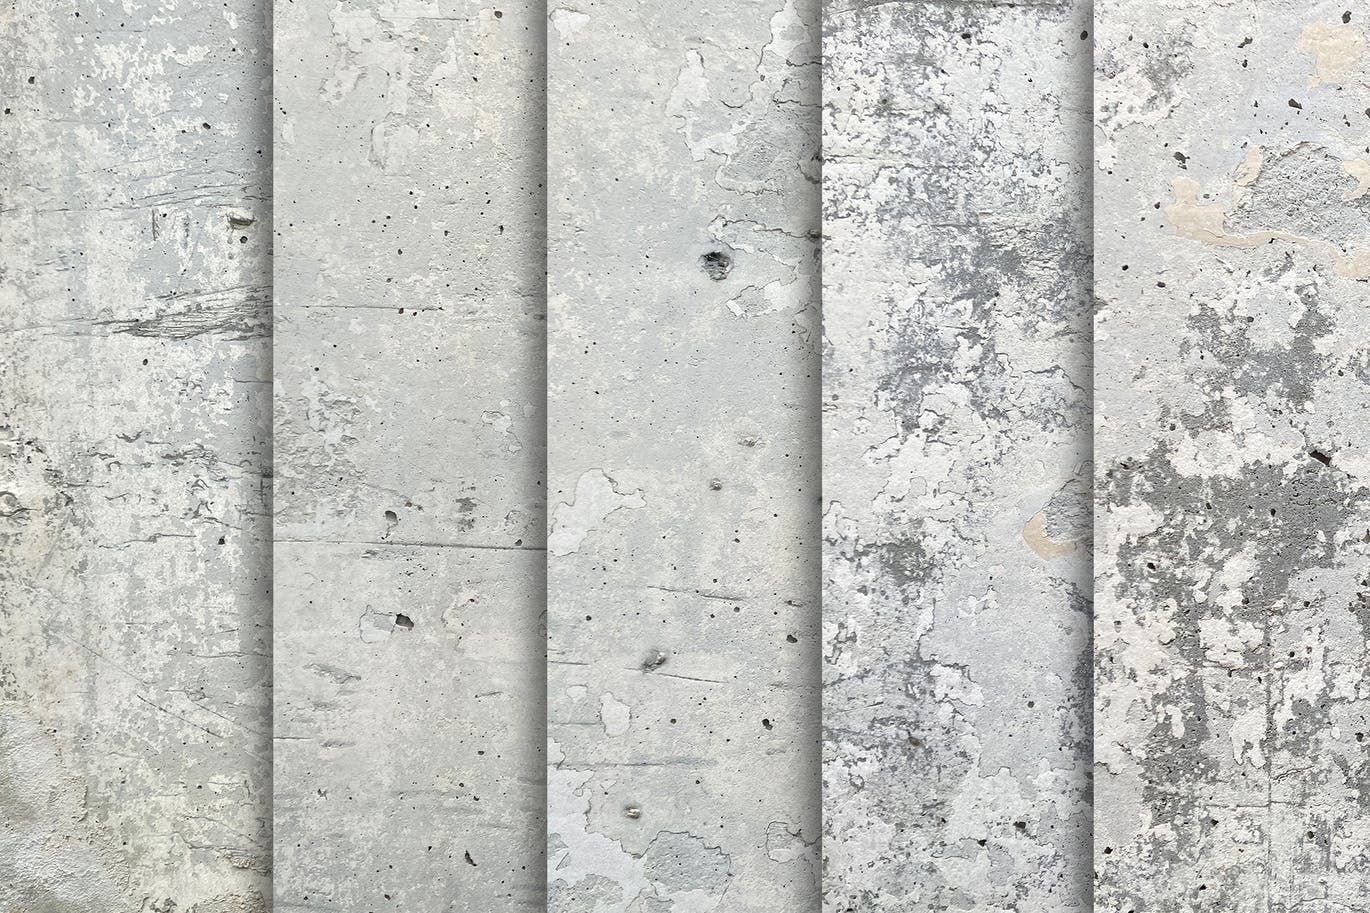 10个水泥墙纹理背景素材 Cement Wall Textures x10 图片素材 第5张